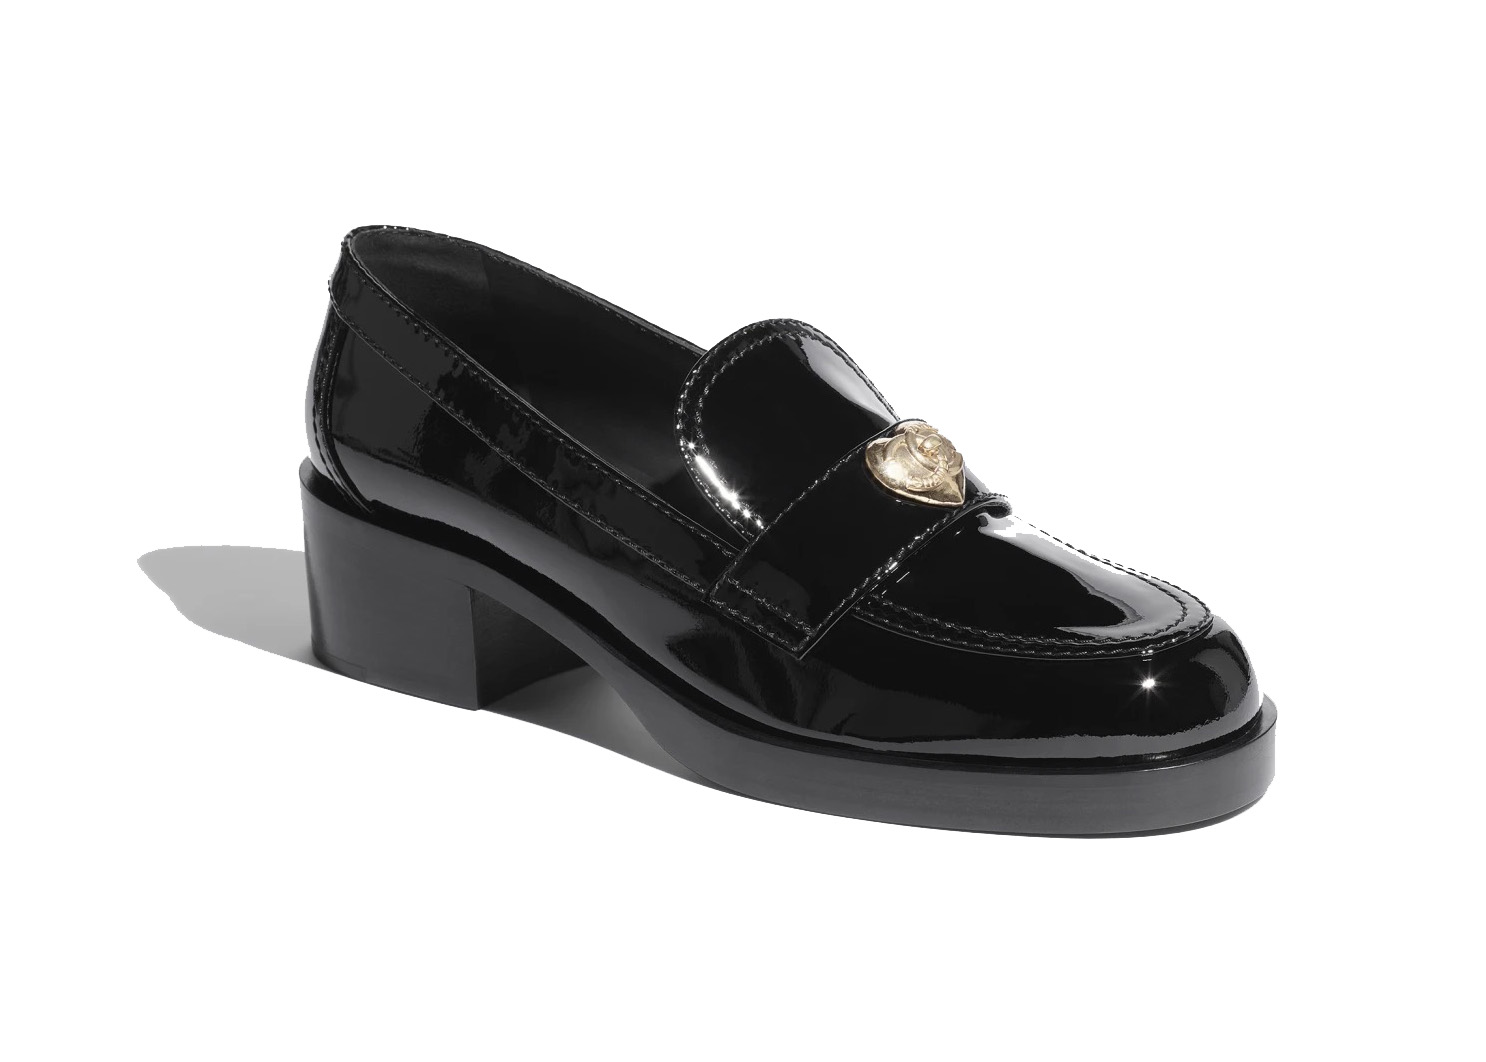 NEW Chanel CC Logo Leather Platform Loafers Size 395 EU95 22B wBOX   eBay